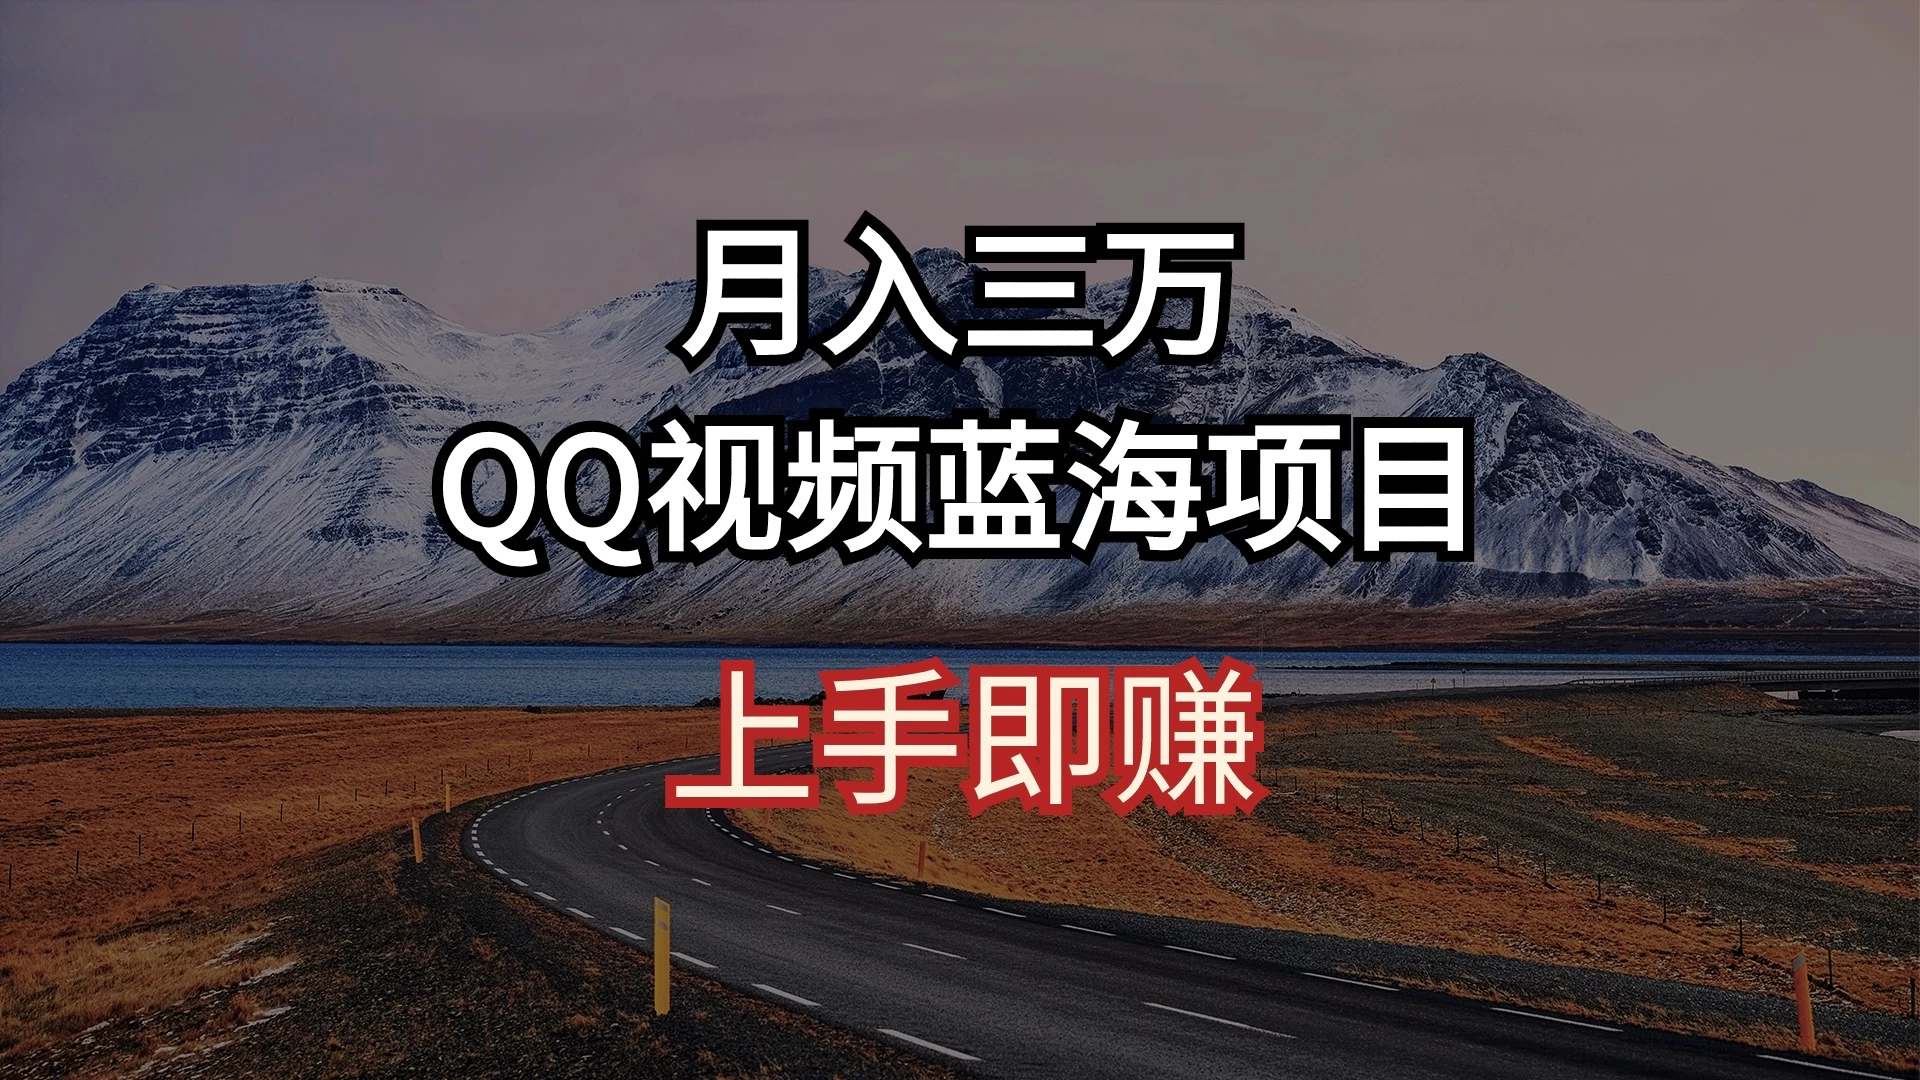 简单搬运去重QQ视频 蓝海赛道入手即赚 月入三万